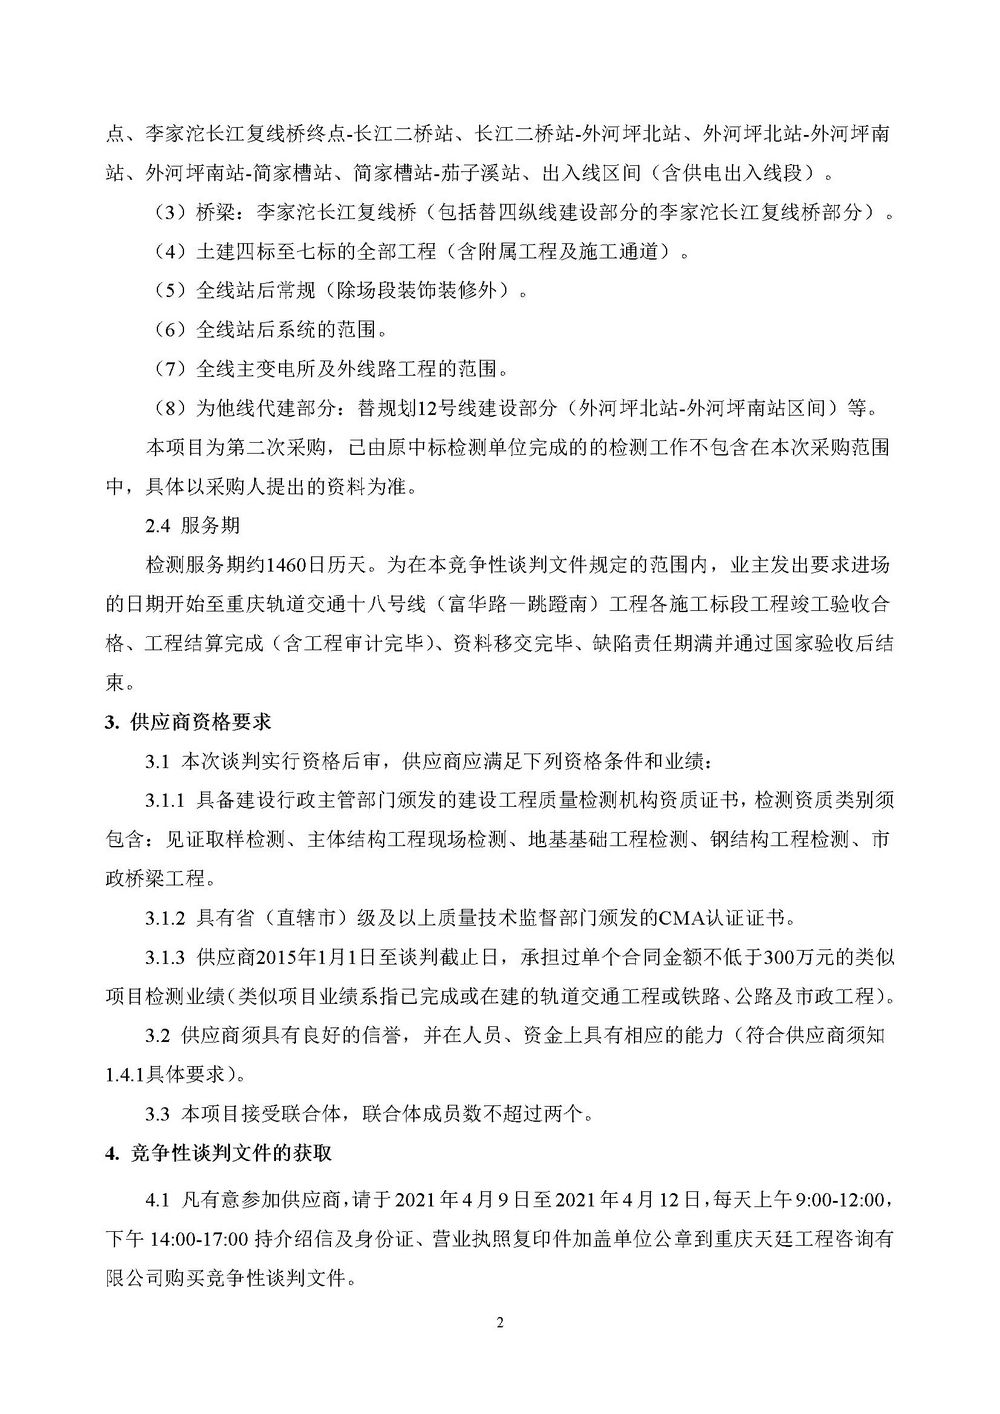 20210409b重庆轨道交通十八号线-富华路-跳蹬南-工程检测工程二标段-第二次采购-采购公告.jpg